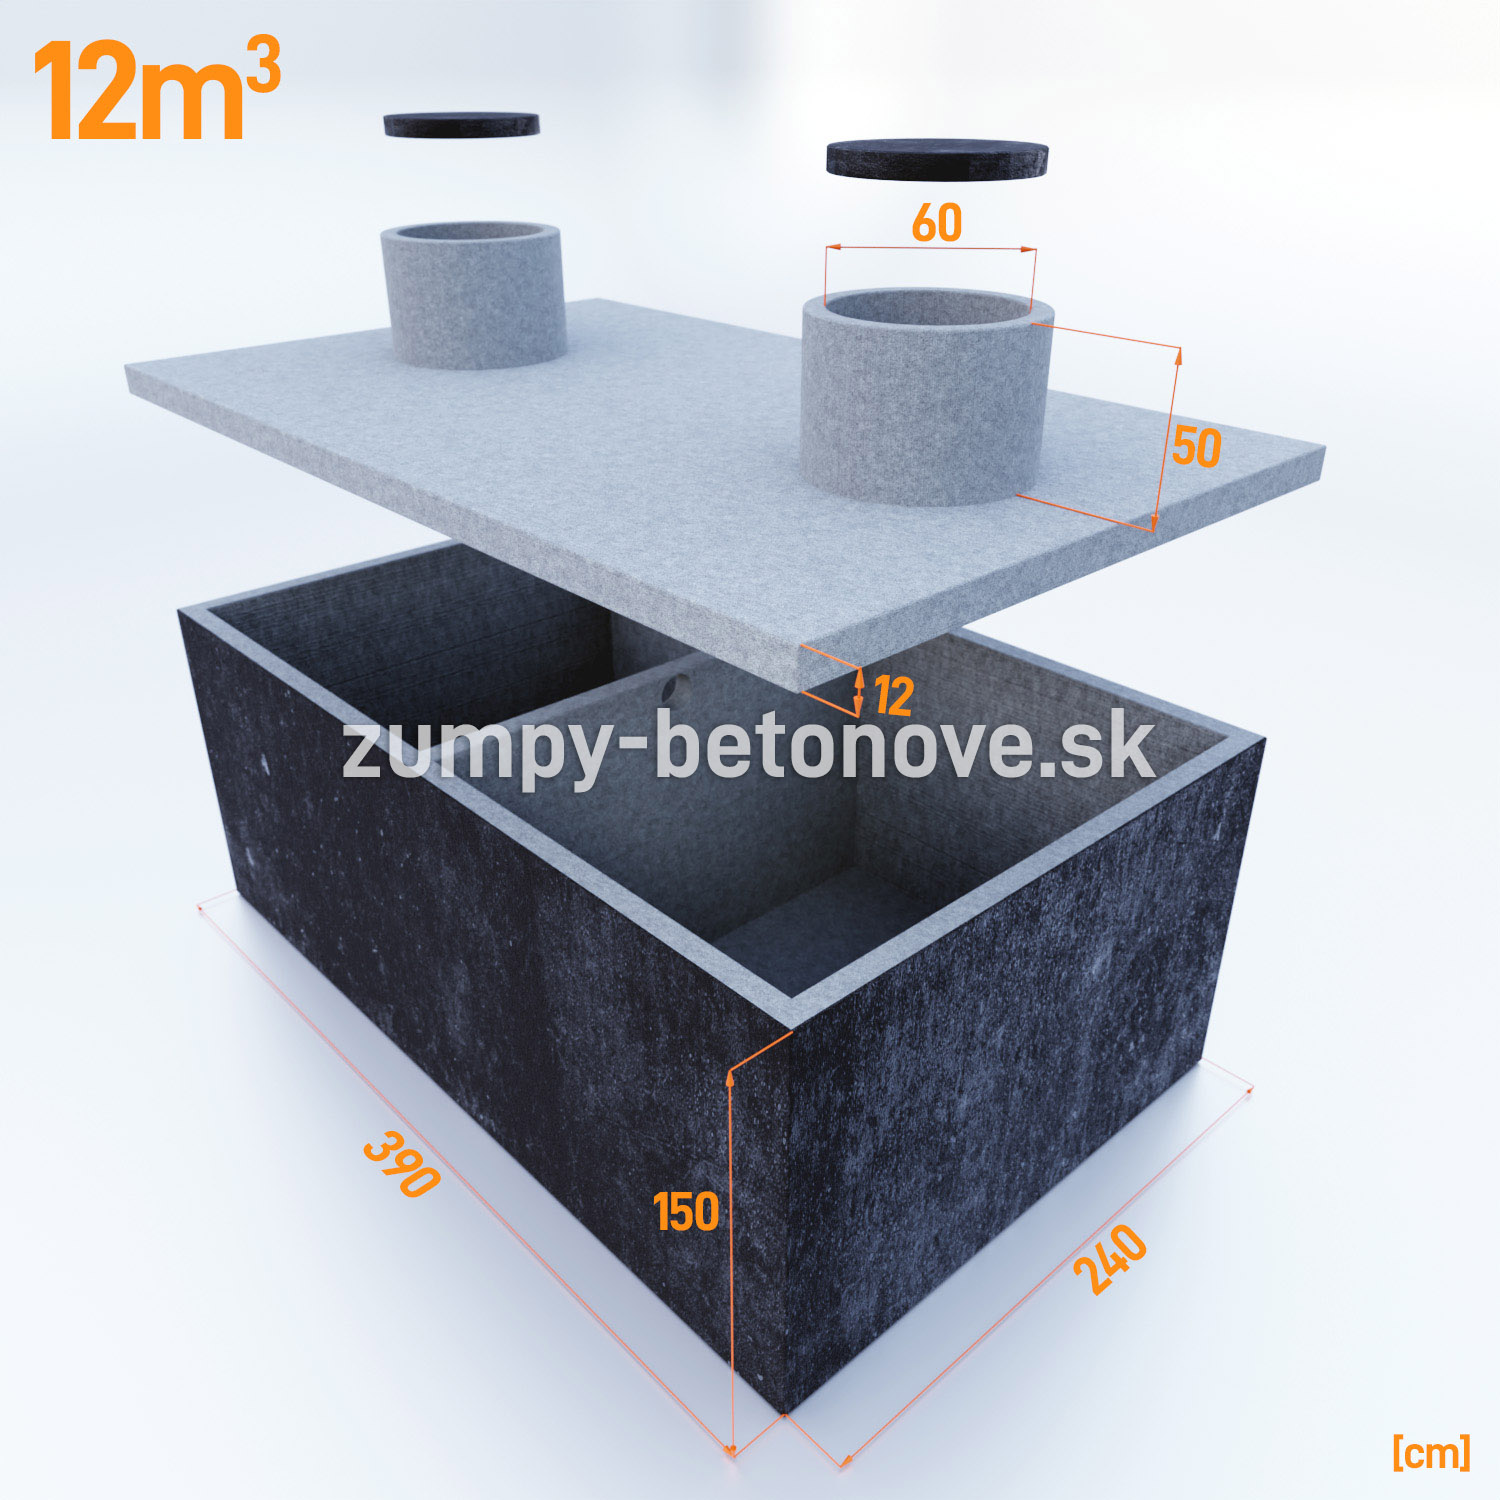 dvojkomorova-betonova-nadrz-12-m3